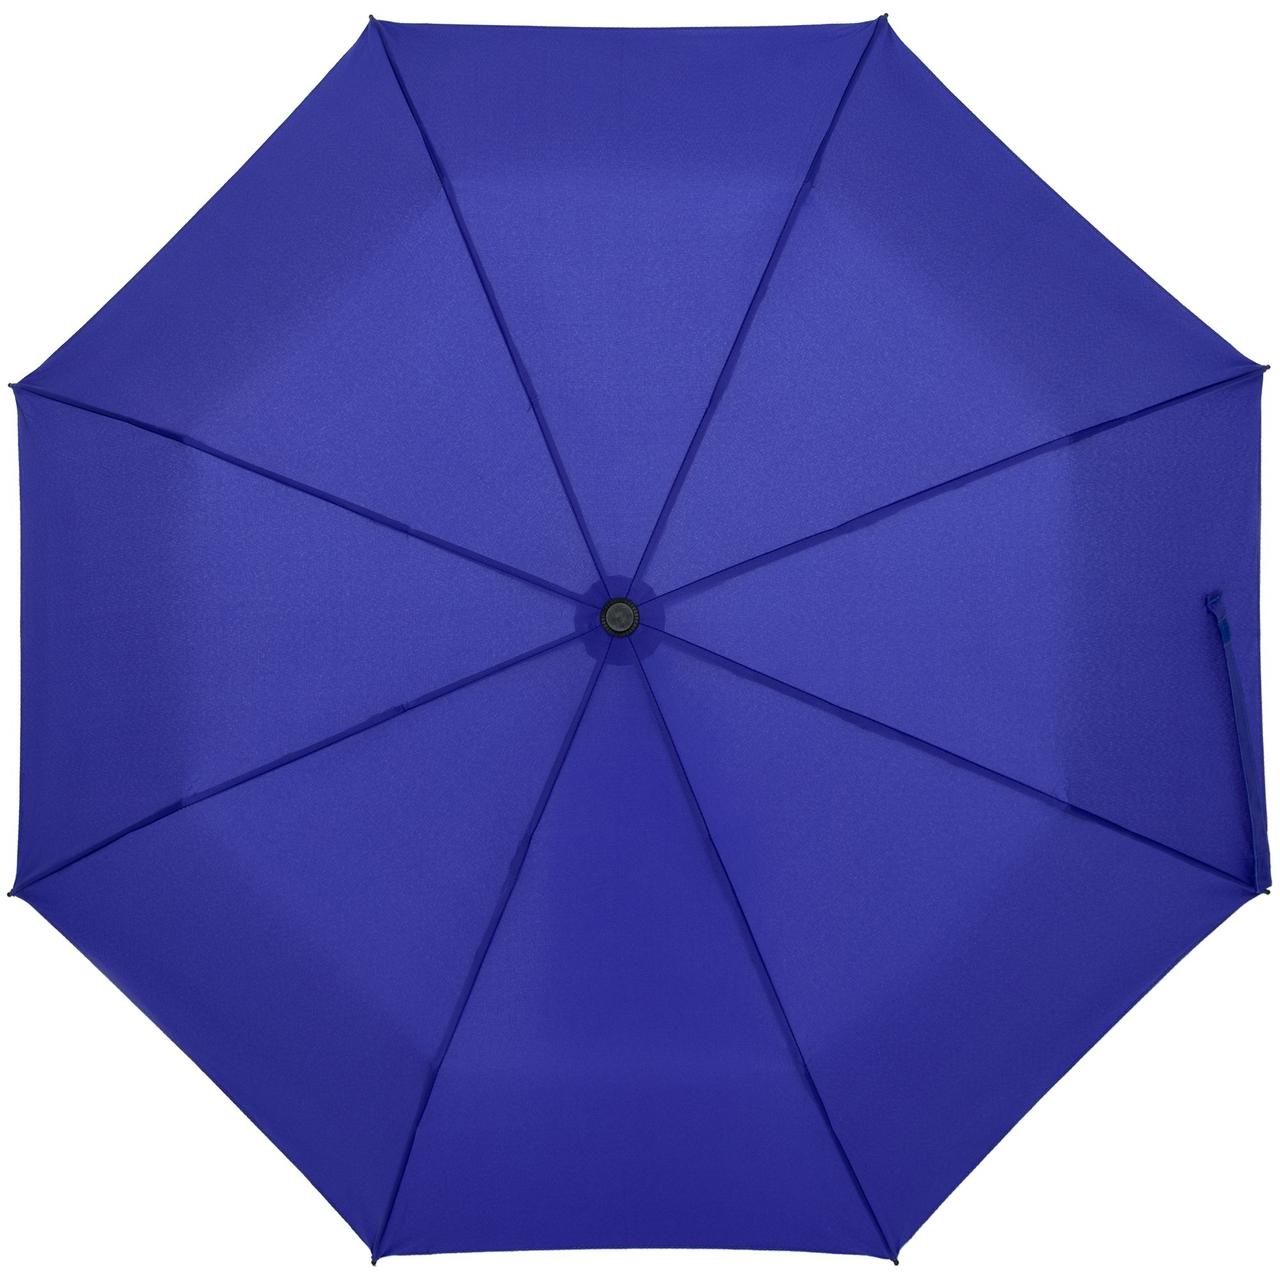 Зонт складной Clevis с ручкой-карабином, ярко-синий (артикул 10992.44), фото 1